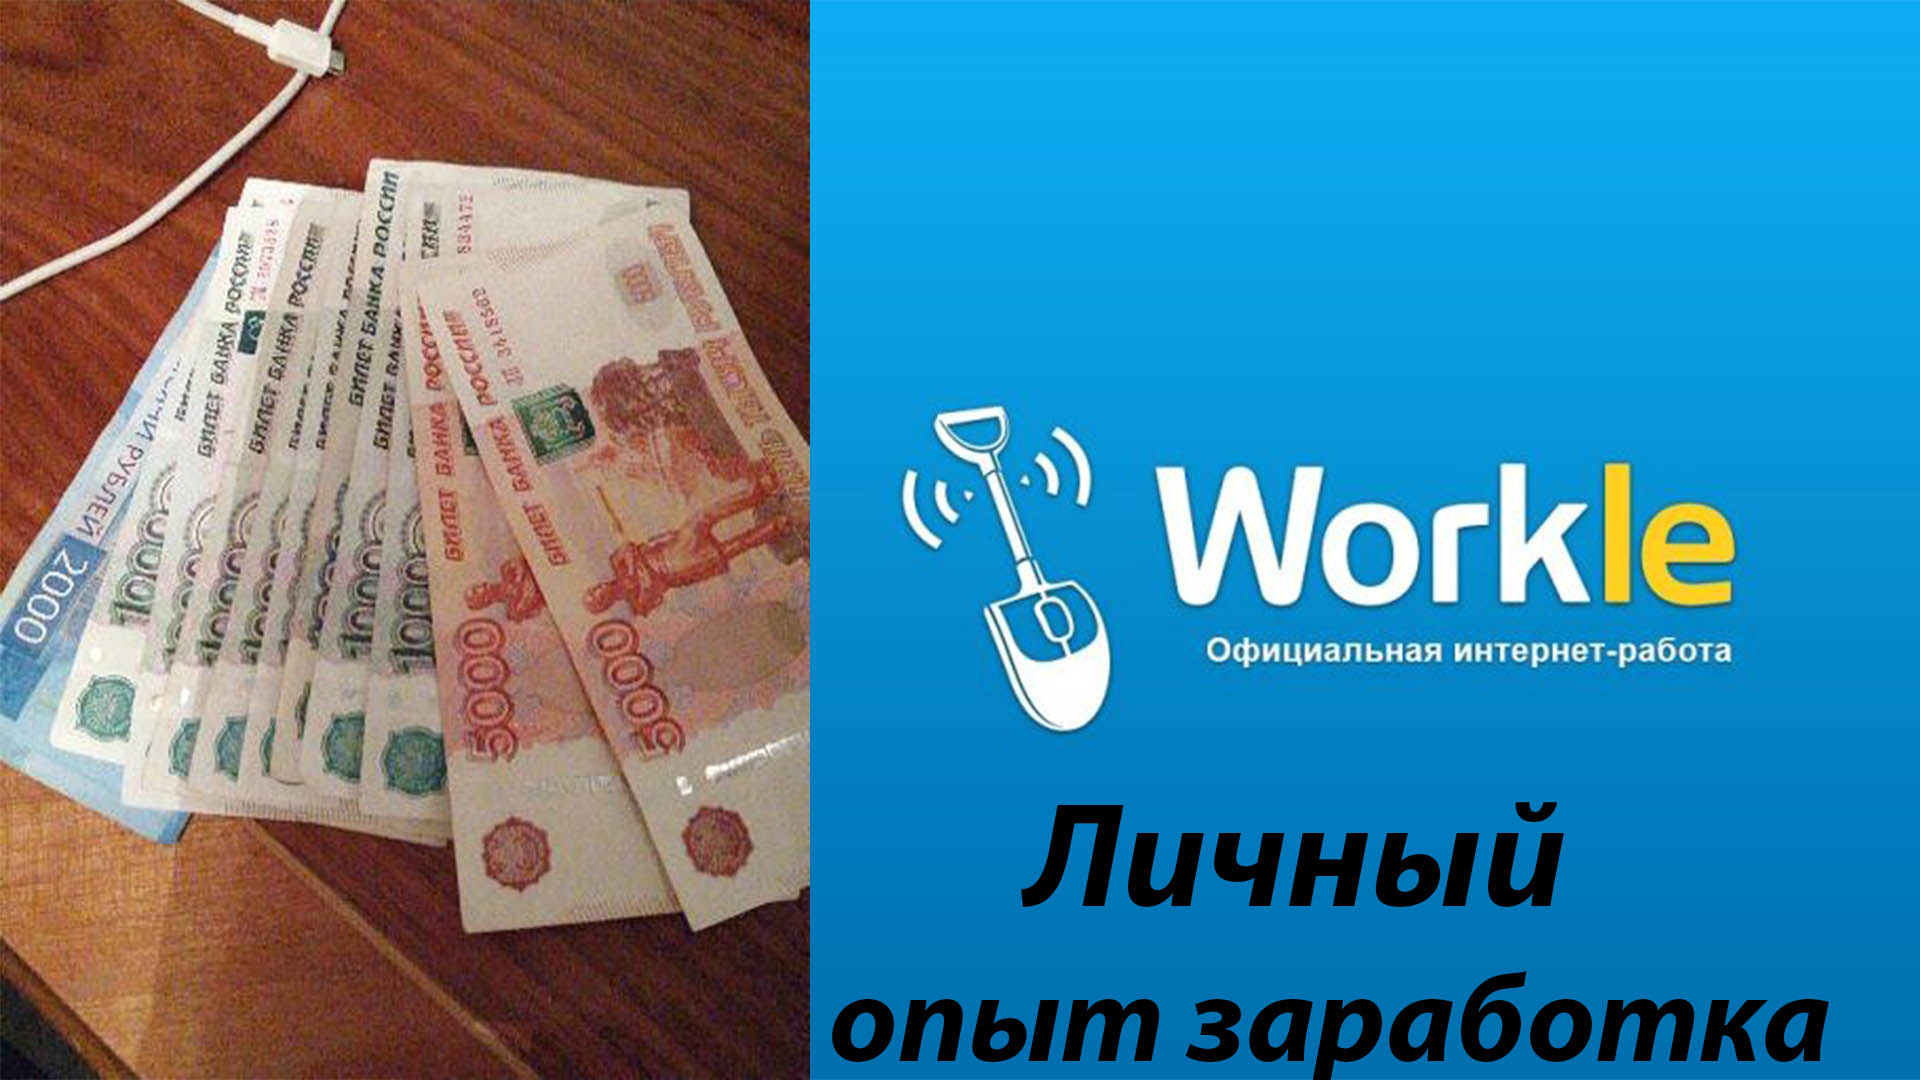 Заработок на Workle как зарегистрироваться, работать, отзыв